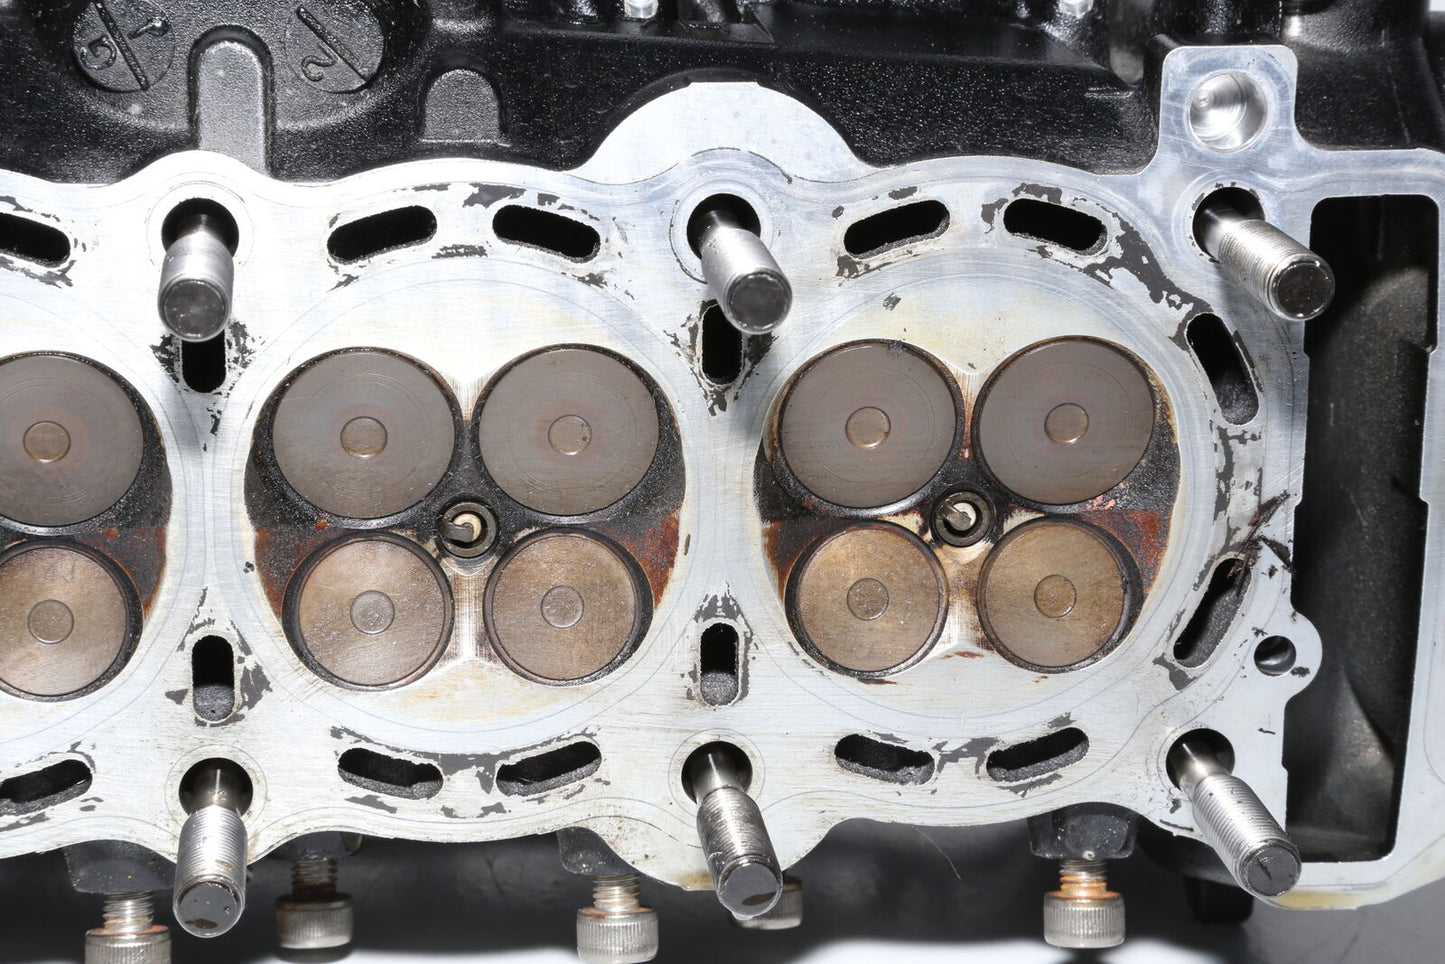 11-21 (14) Suzuki Gsxr600 Complete Engine Top End Cylinder Head OEM *LOW MILES*